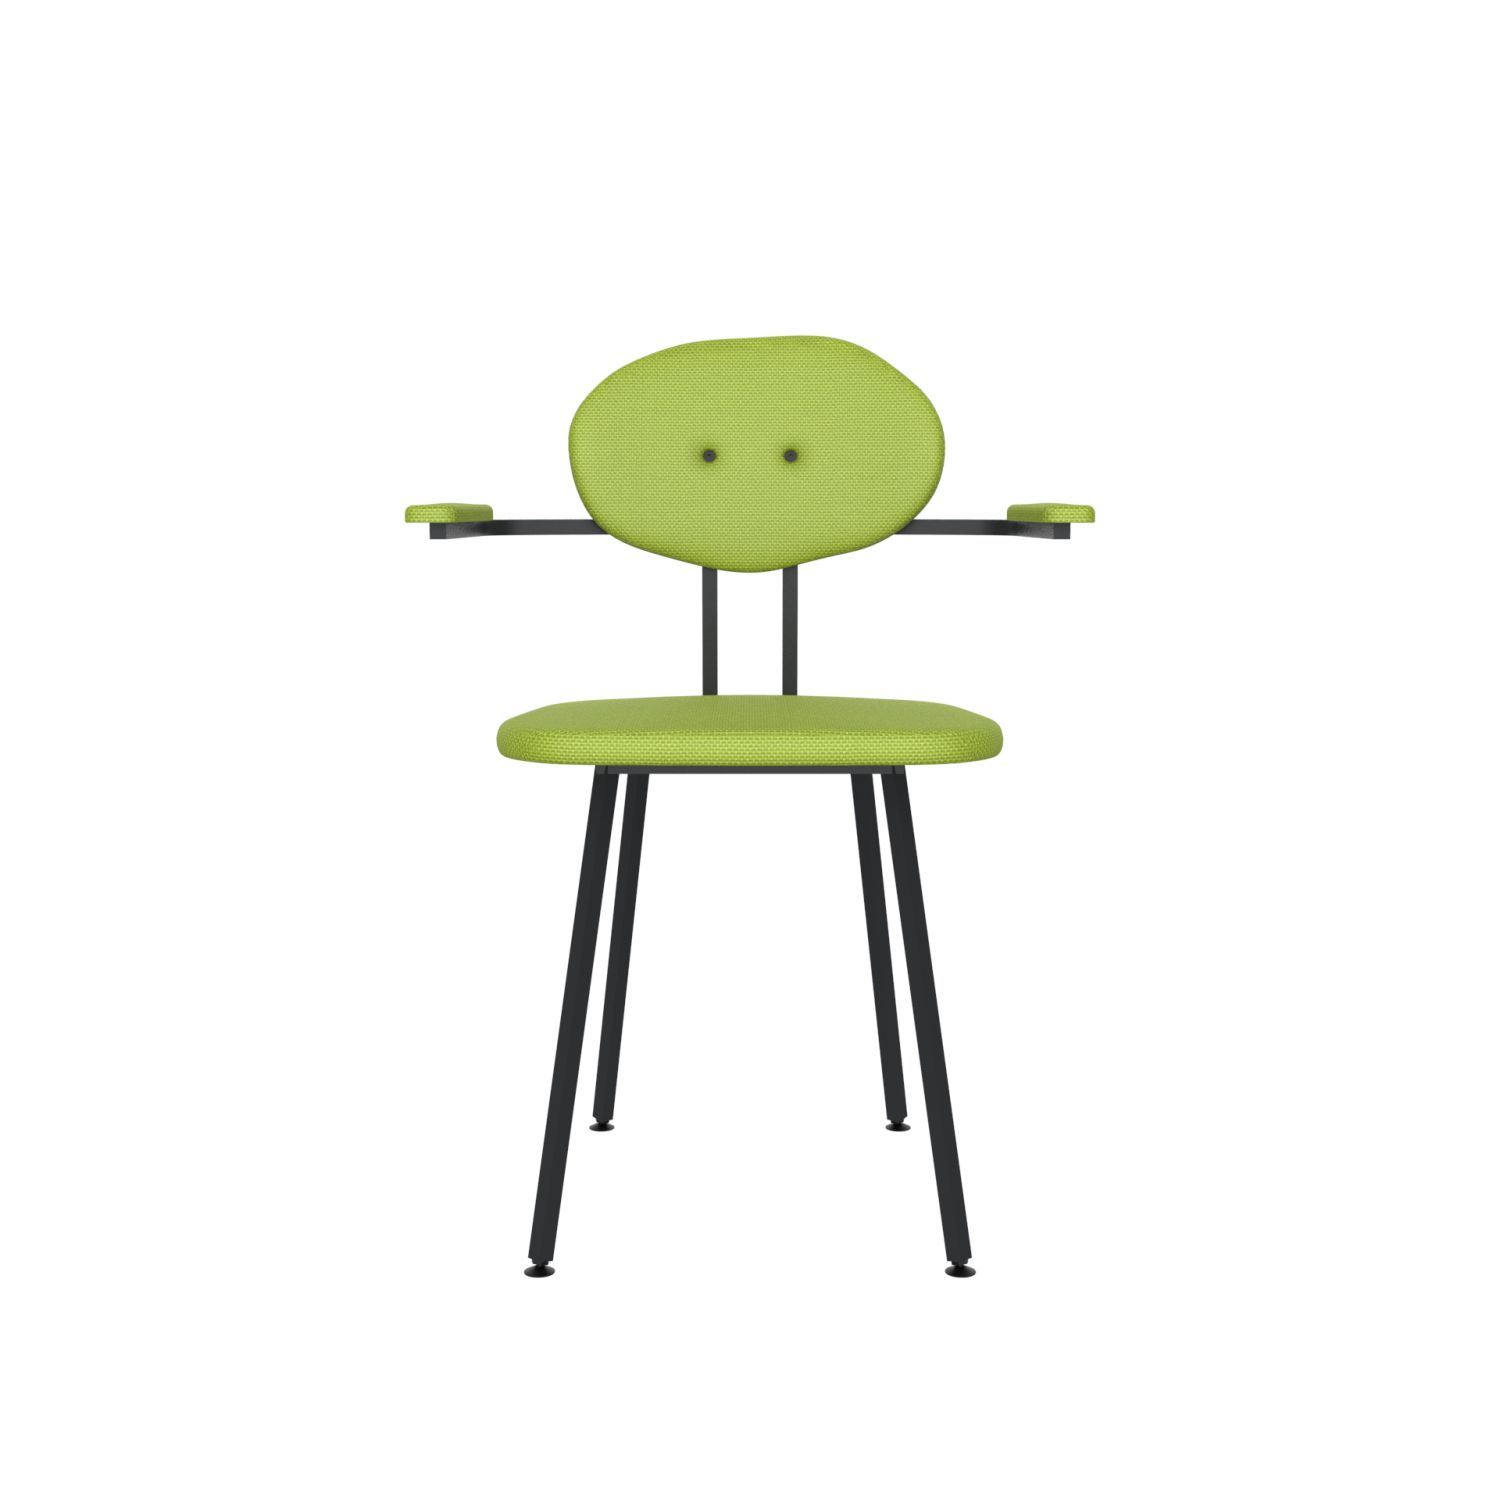 lensvelt maarten baas chair 102 not stackable with armrests backrest d fairway green 020 black ral9005 hard leg ends